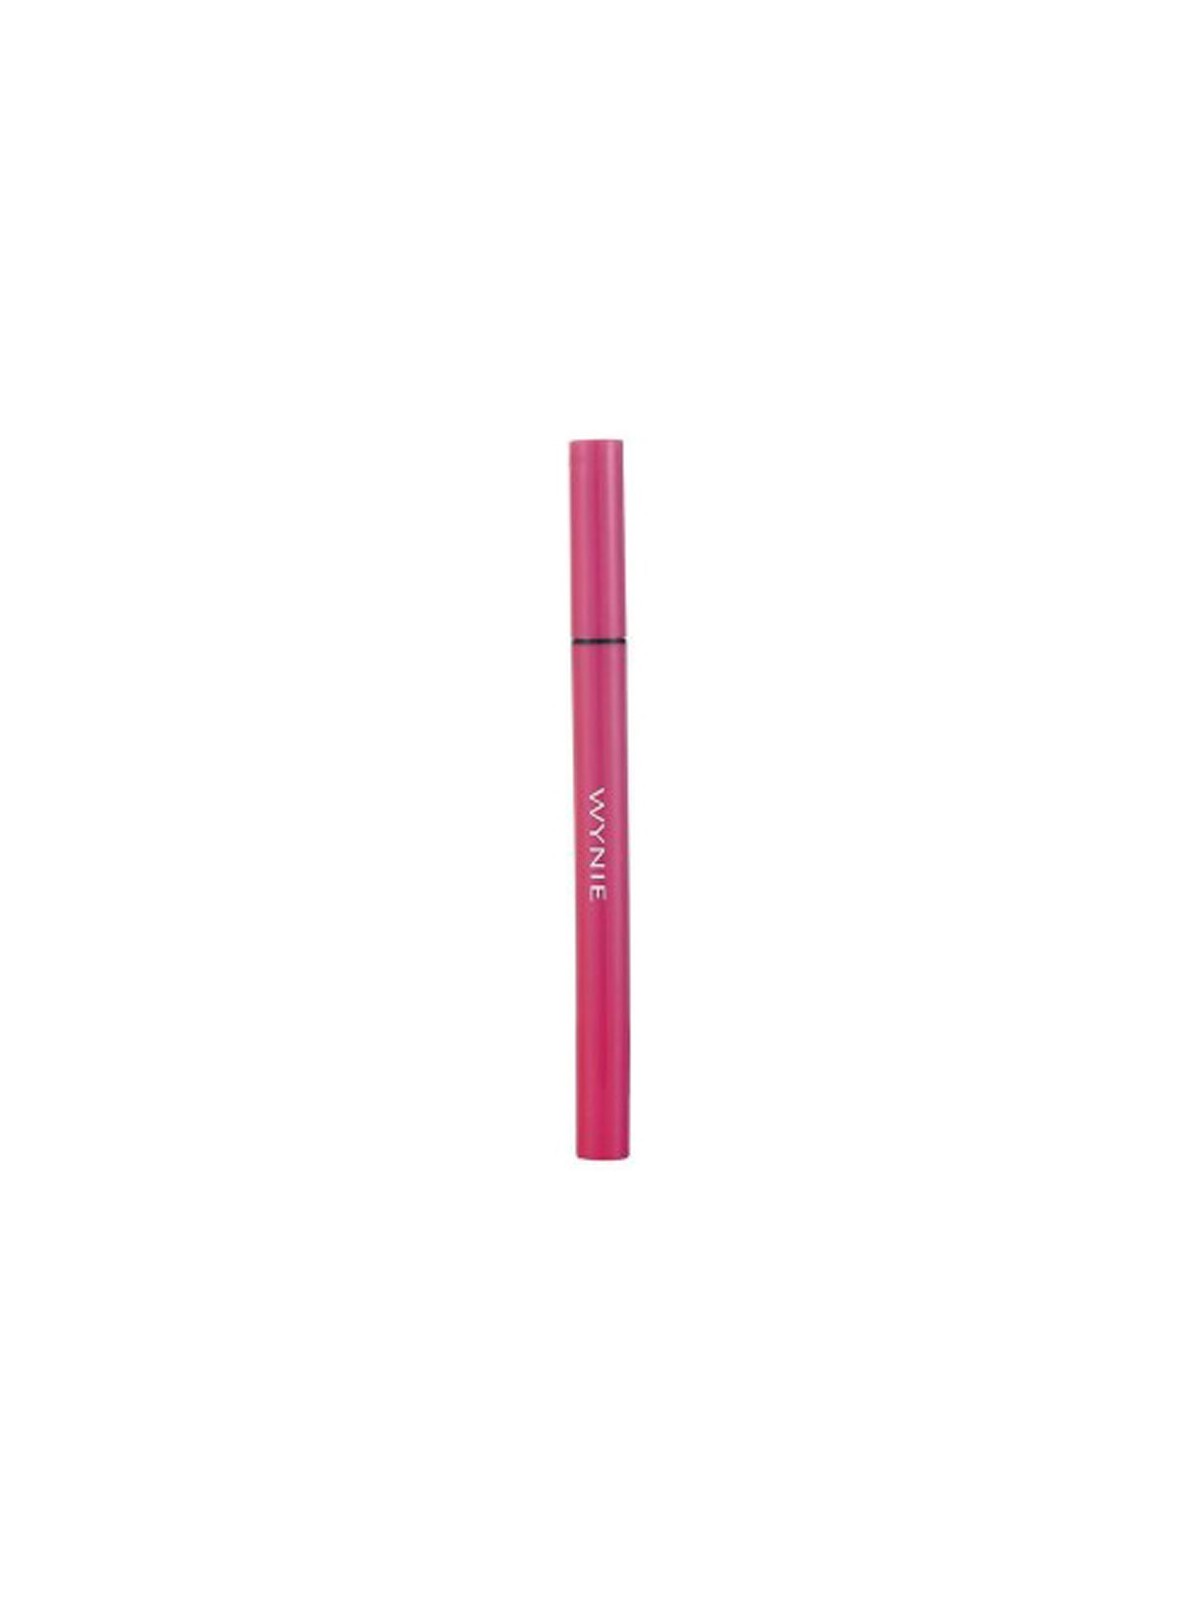 Comprar Wynie eyeliner liquido rosa 8g en Inicio por sólo 3,00 € o un precio específico de 3,00 € en Thalie Care